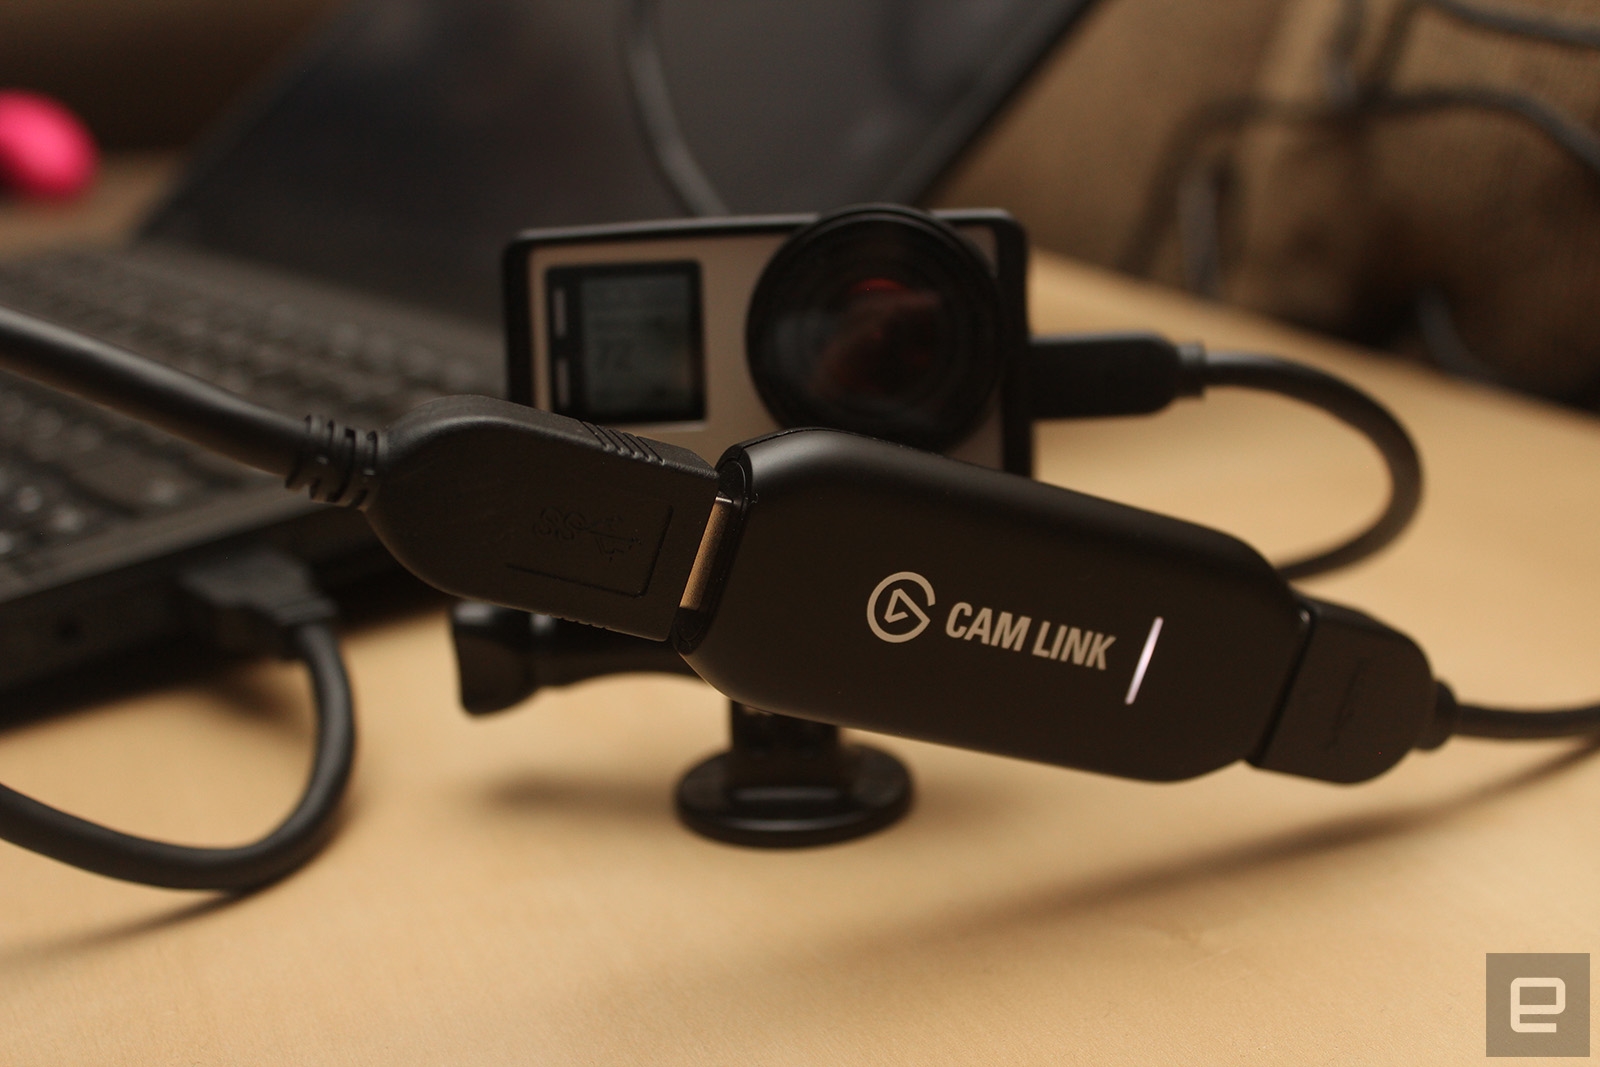 Elgato's Cam Link turns your DSLR into a souped-up webcam | DeviceDaily.com